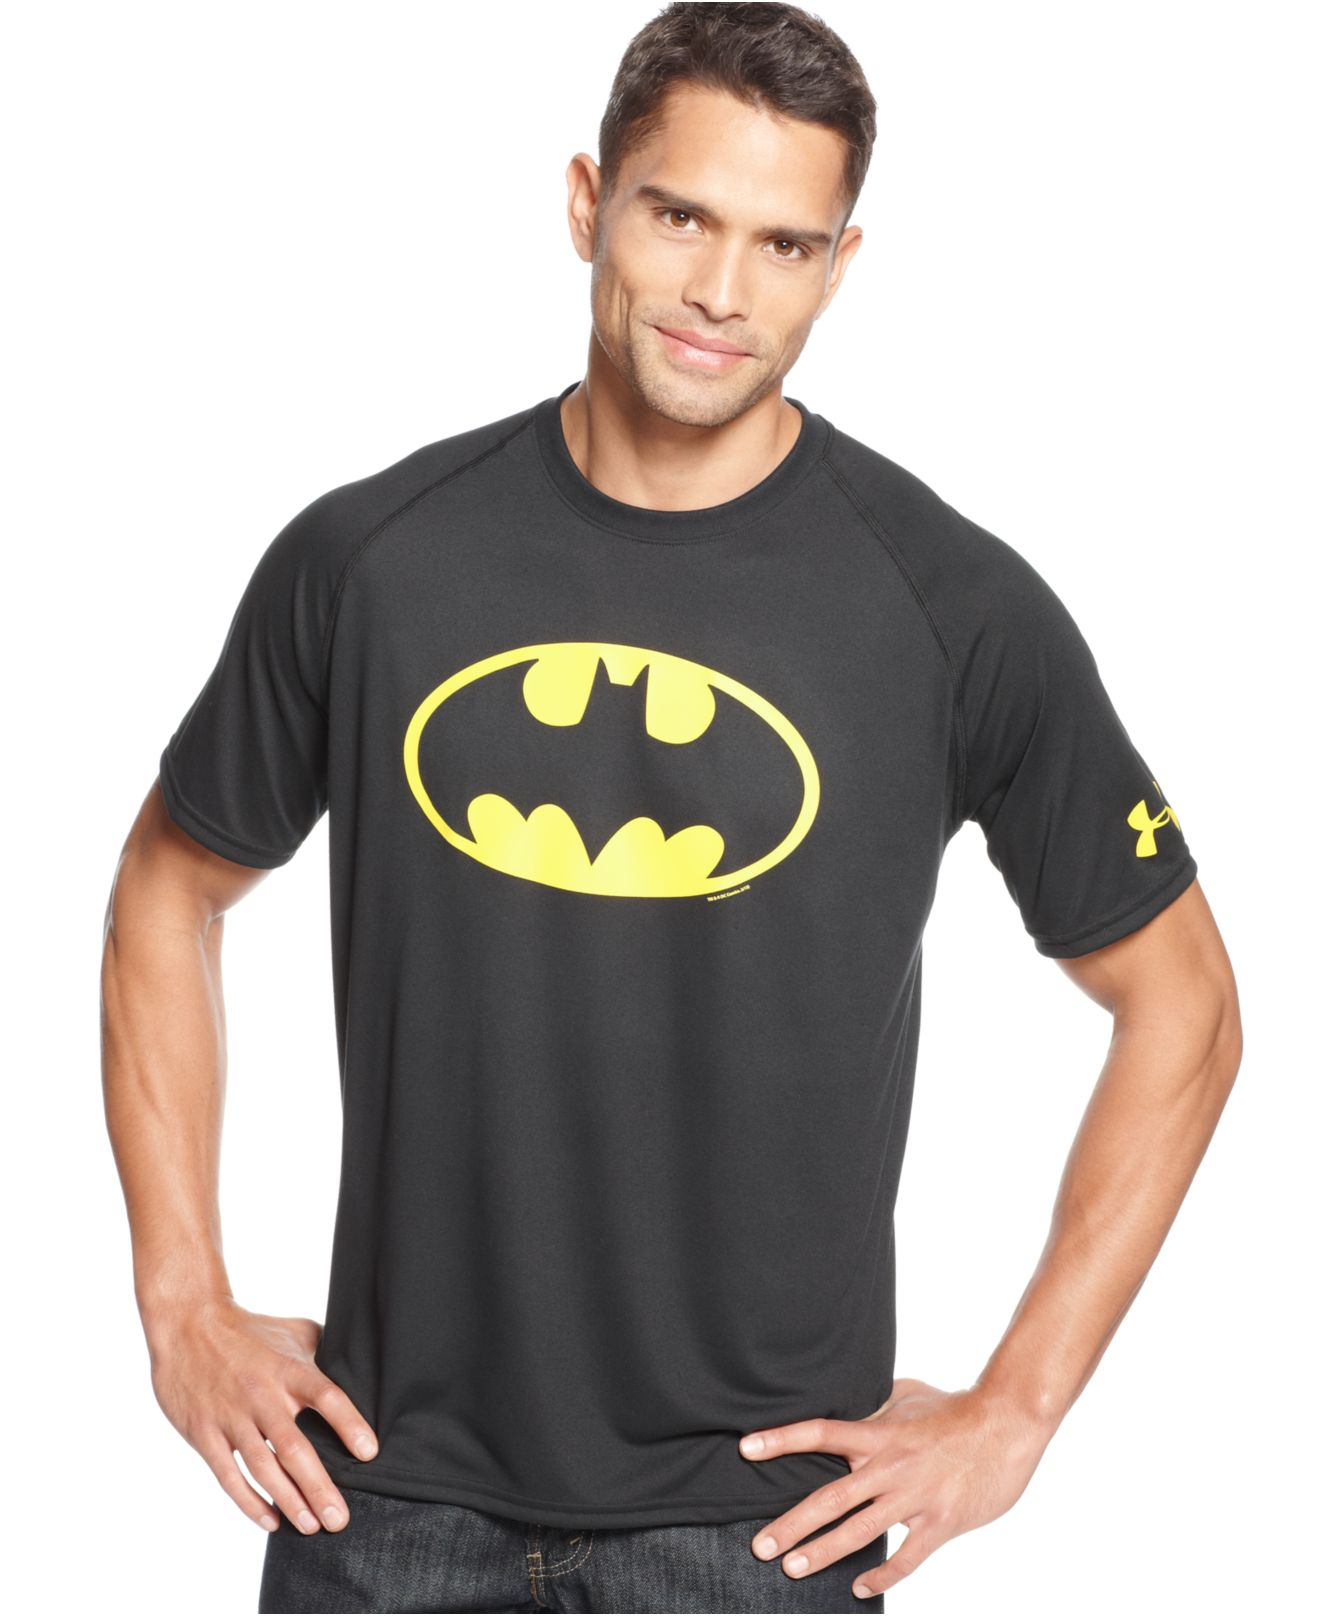 Under Armour Batman T Shirt Shop, 57% OFF | www.kayakerguide.com